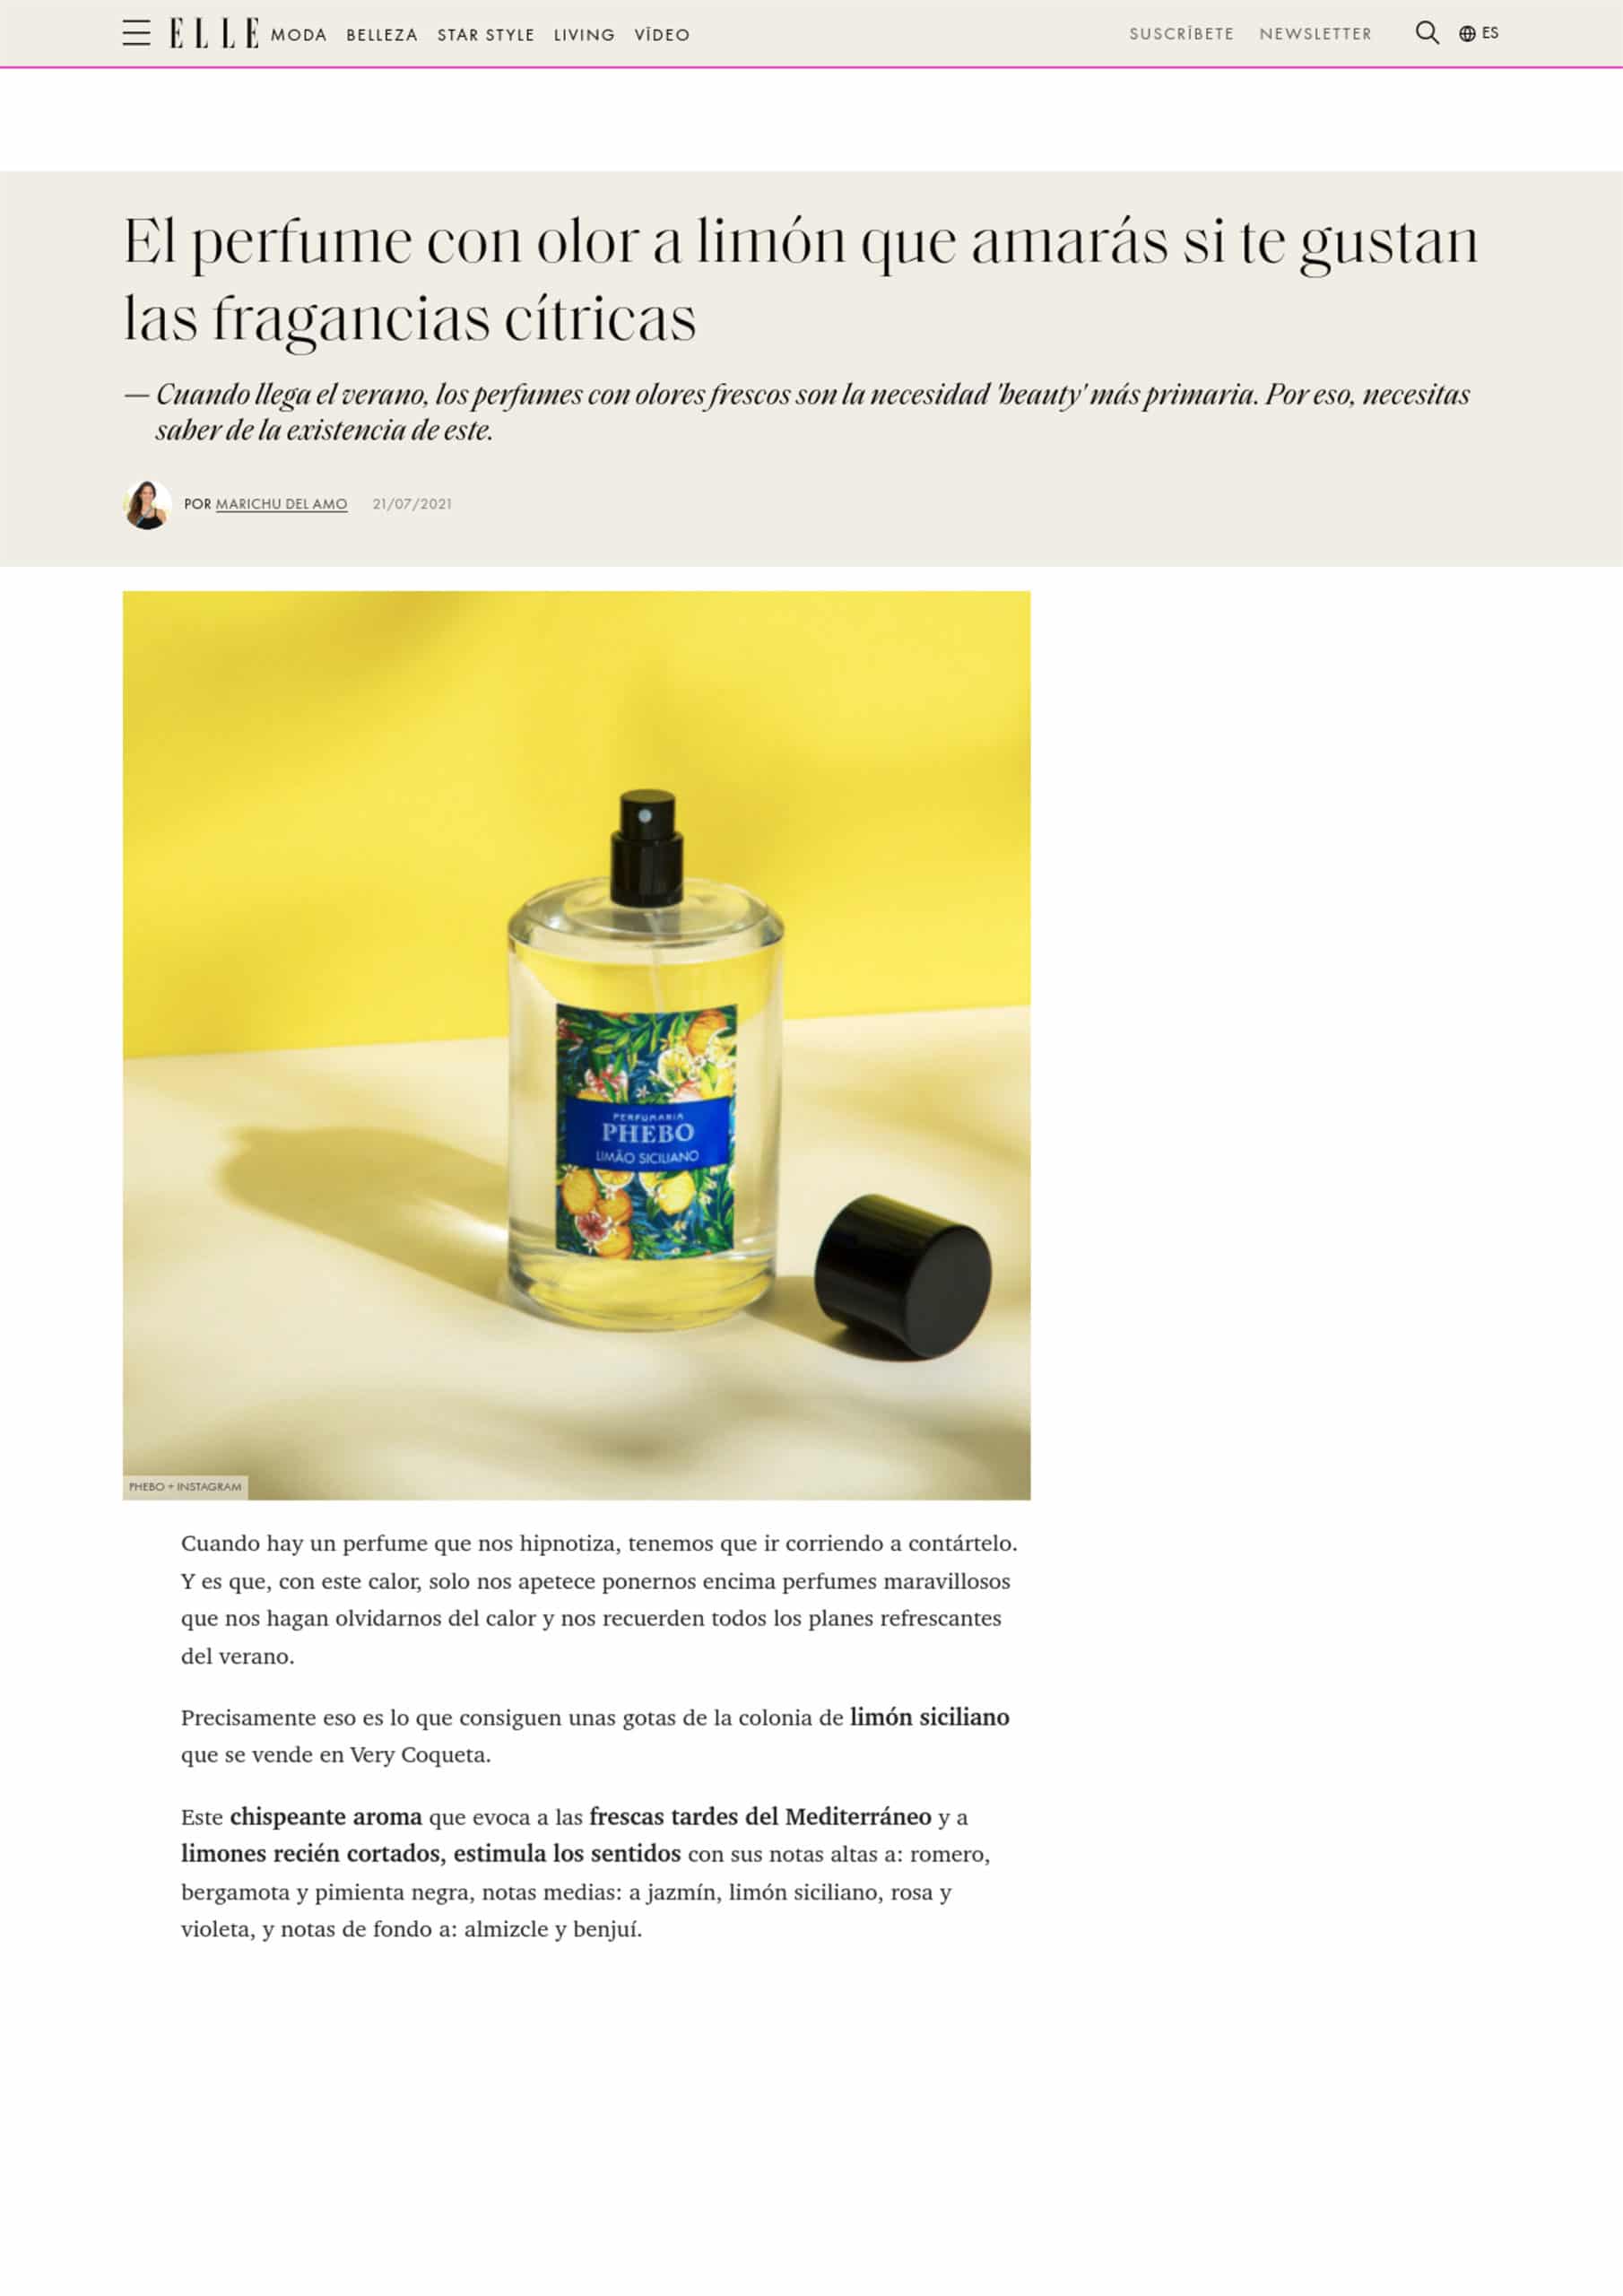 El perfume con olor a limón que amarás si te gustan las fragancias cítricas - 21 Jul 2021